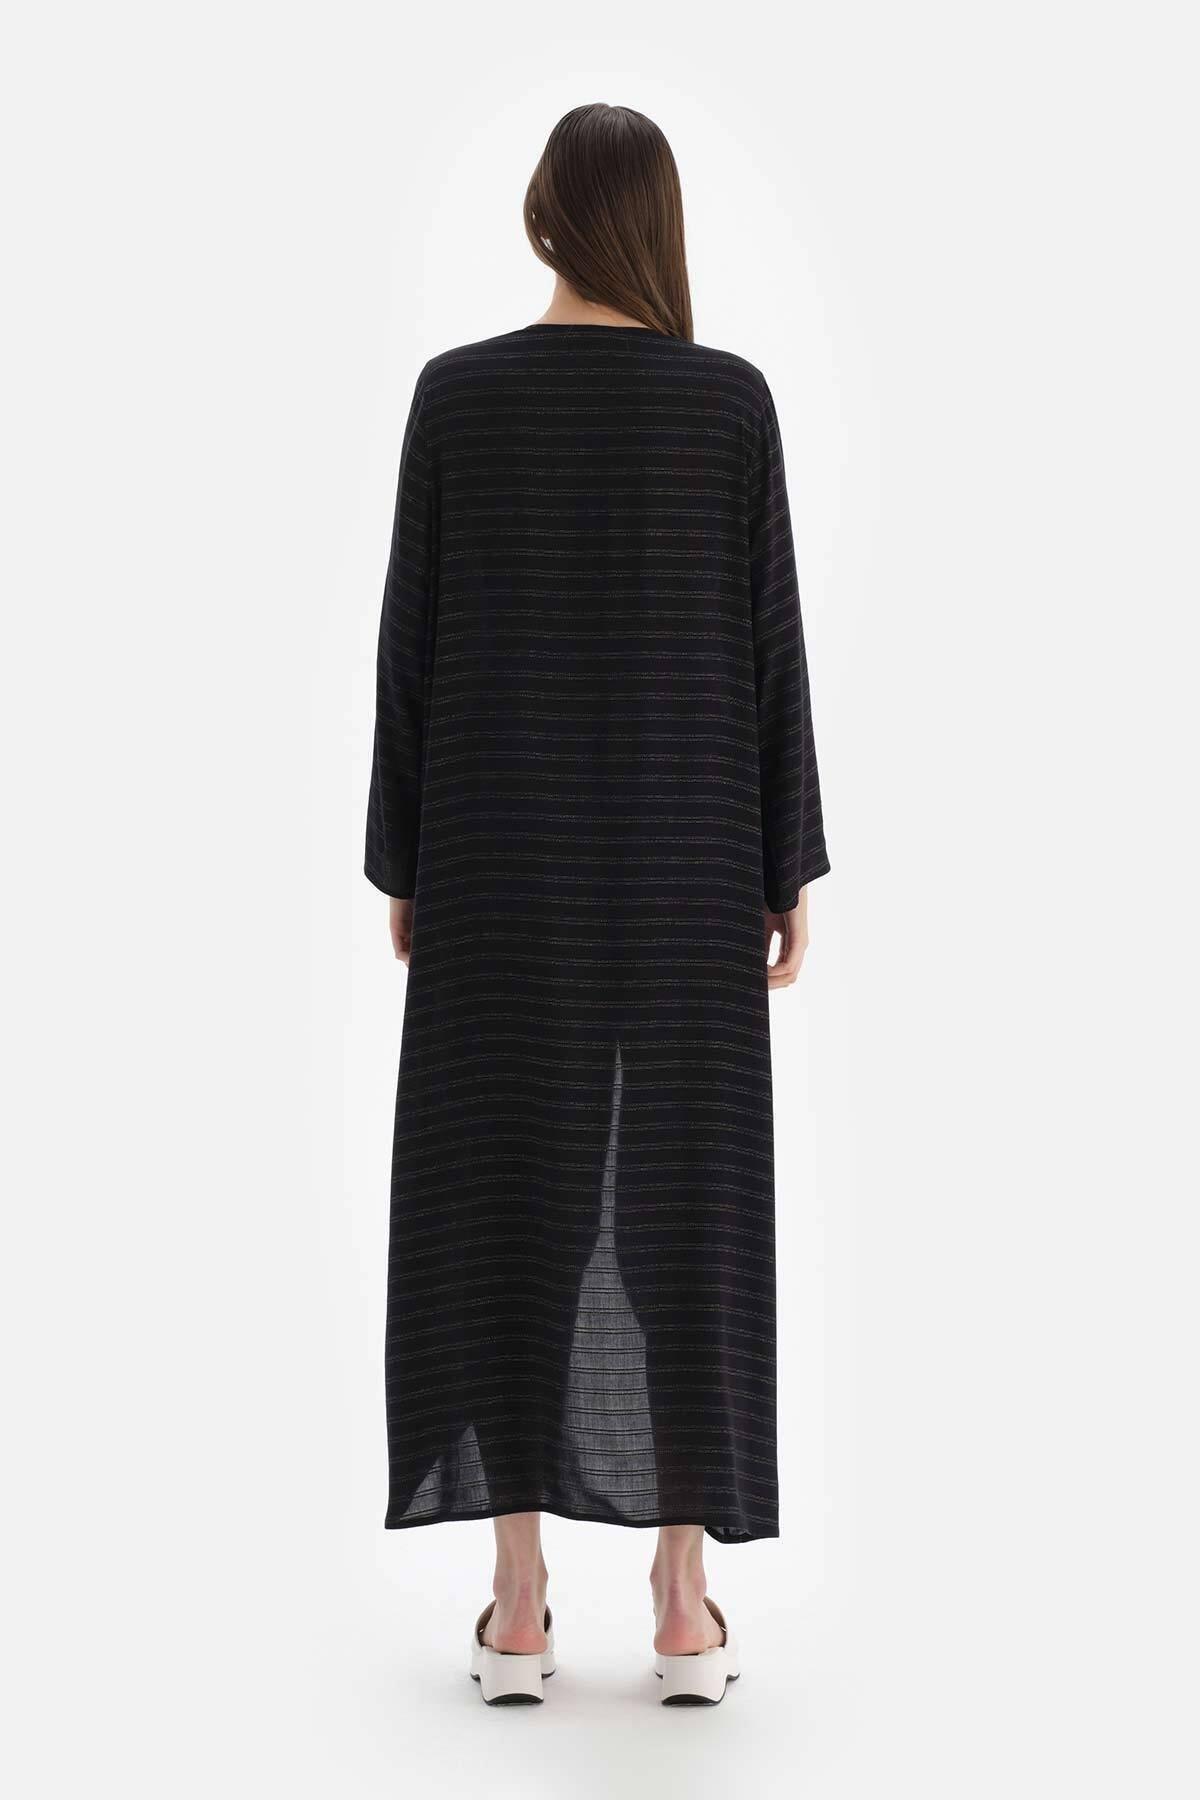 Dagi - Black Long Kimono